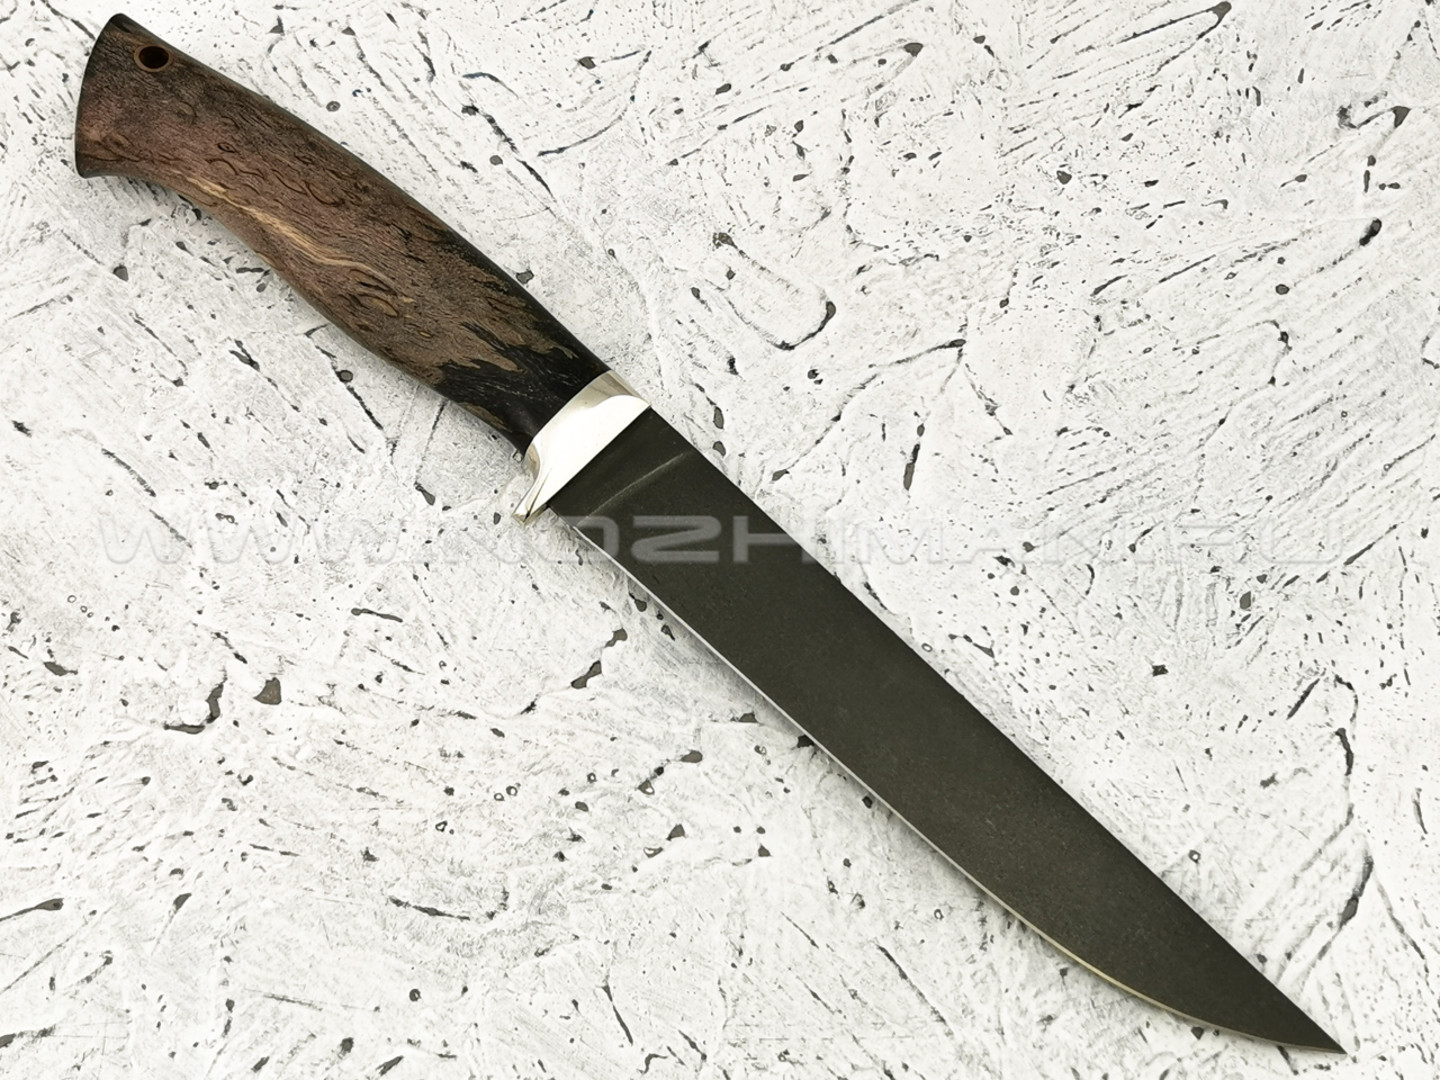 Нож "Филейный-М" булатная сталь, рукоять карельская береза (Наследие)